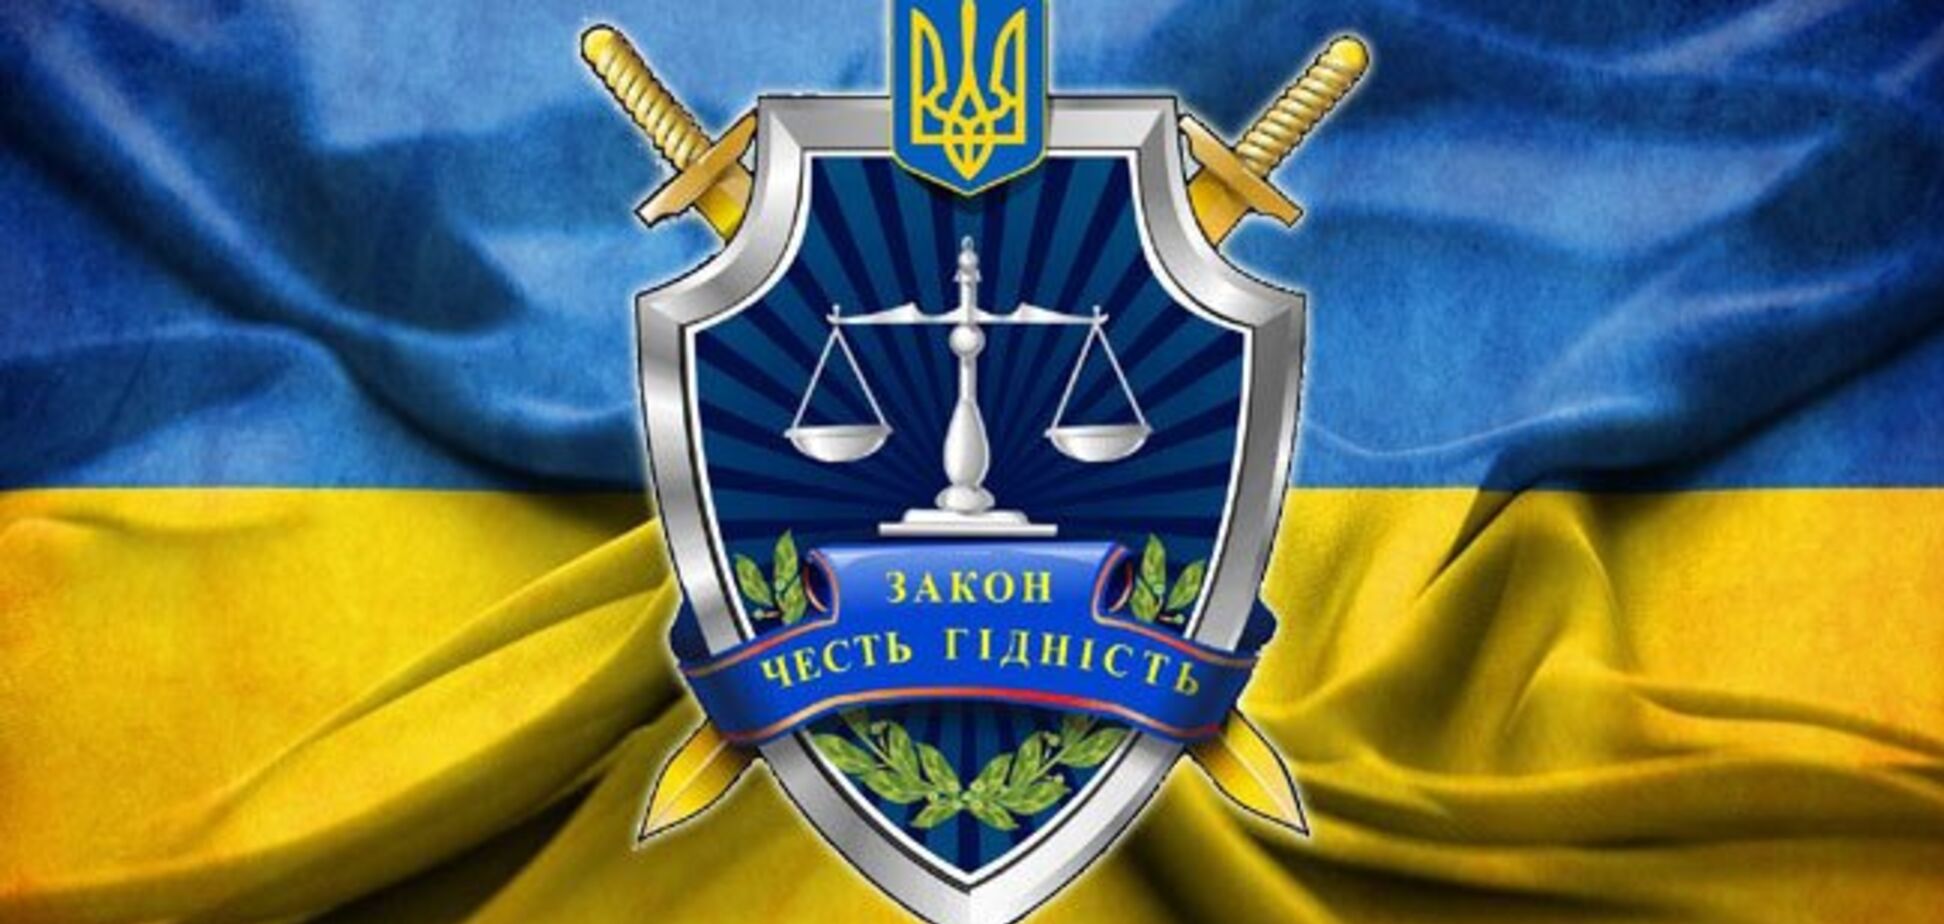 День работников прокуратуры Украины: поздравления с профессиональным праздником